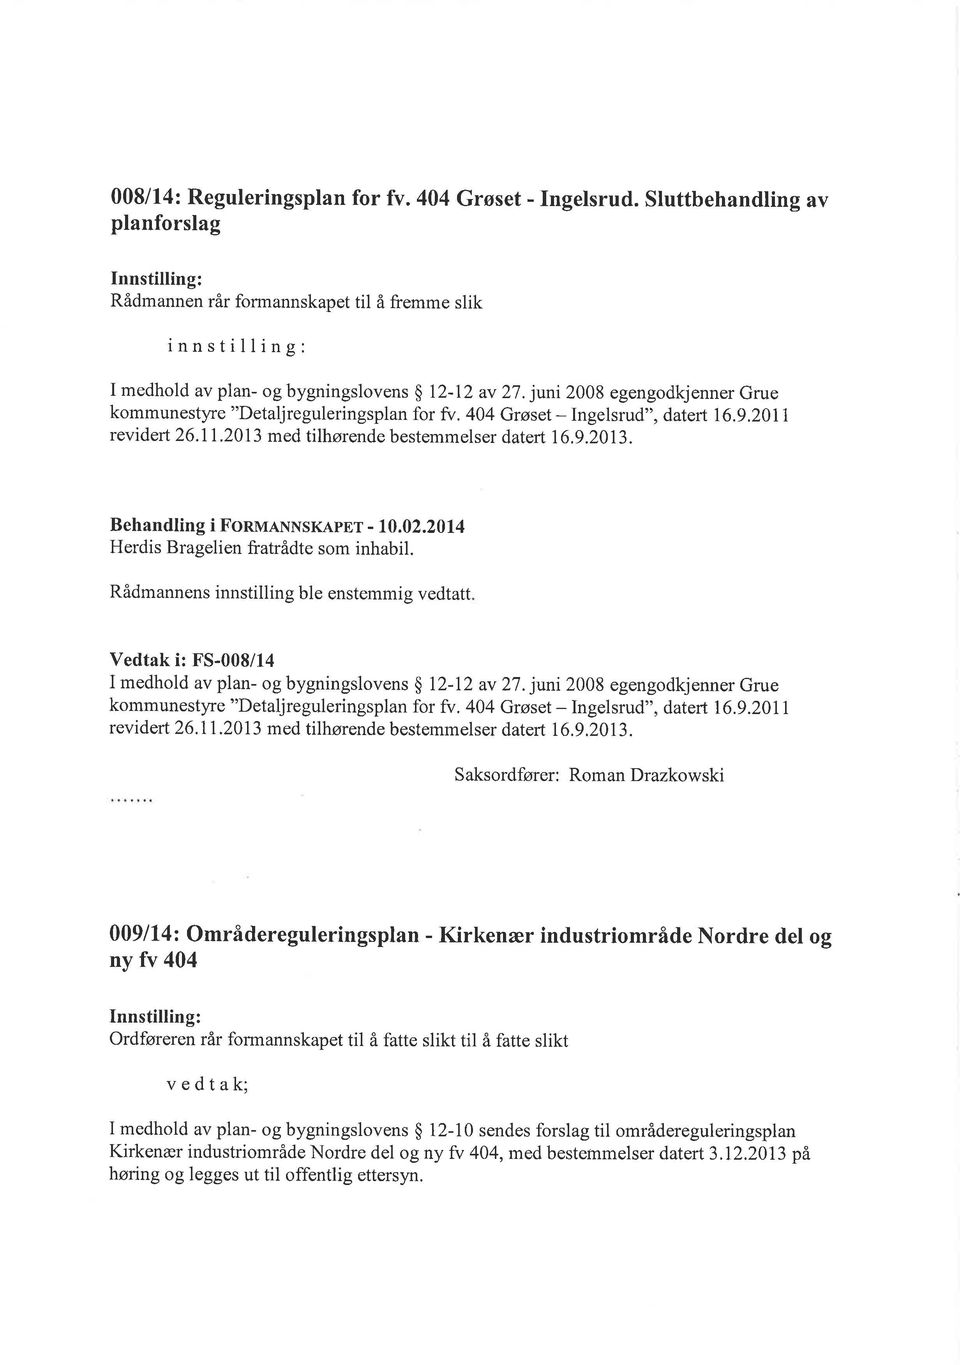 juni 2008 egengodkjenner Grue kommunestyre "Detaljreguleringsplan for fv. 404 Grøset - Ingelsrud", datert 16.9.2011 revidert 26.11.2013 med tilhørende bestemmelser datert 16,9.2013. Behandling i FonvraNNSKApEr - 10.